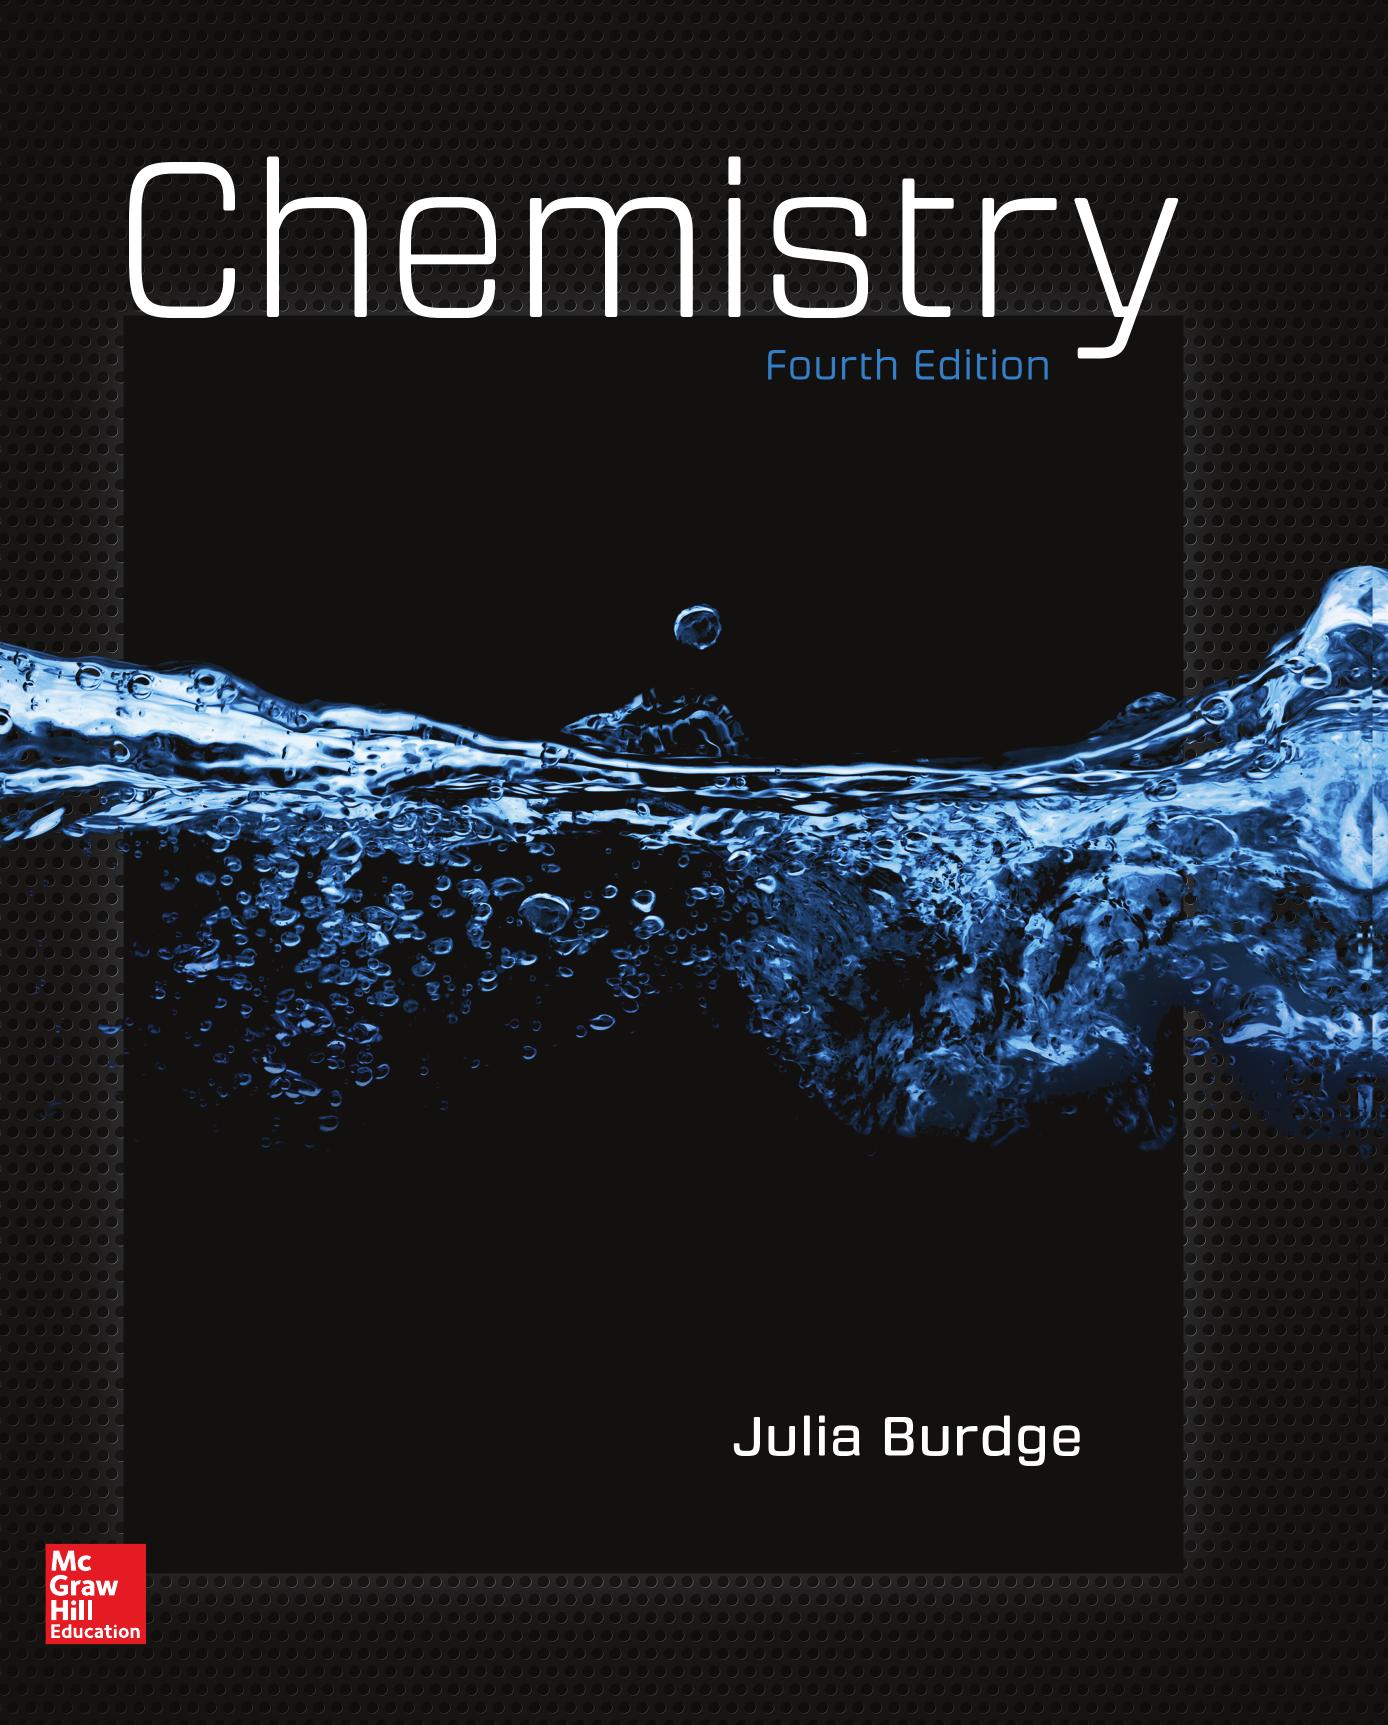 Chemistry; Fourth Edition-Julia Burdge.jpg